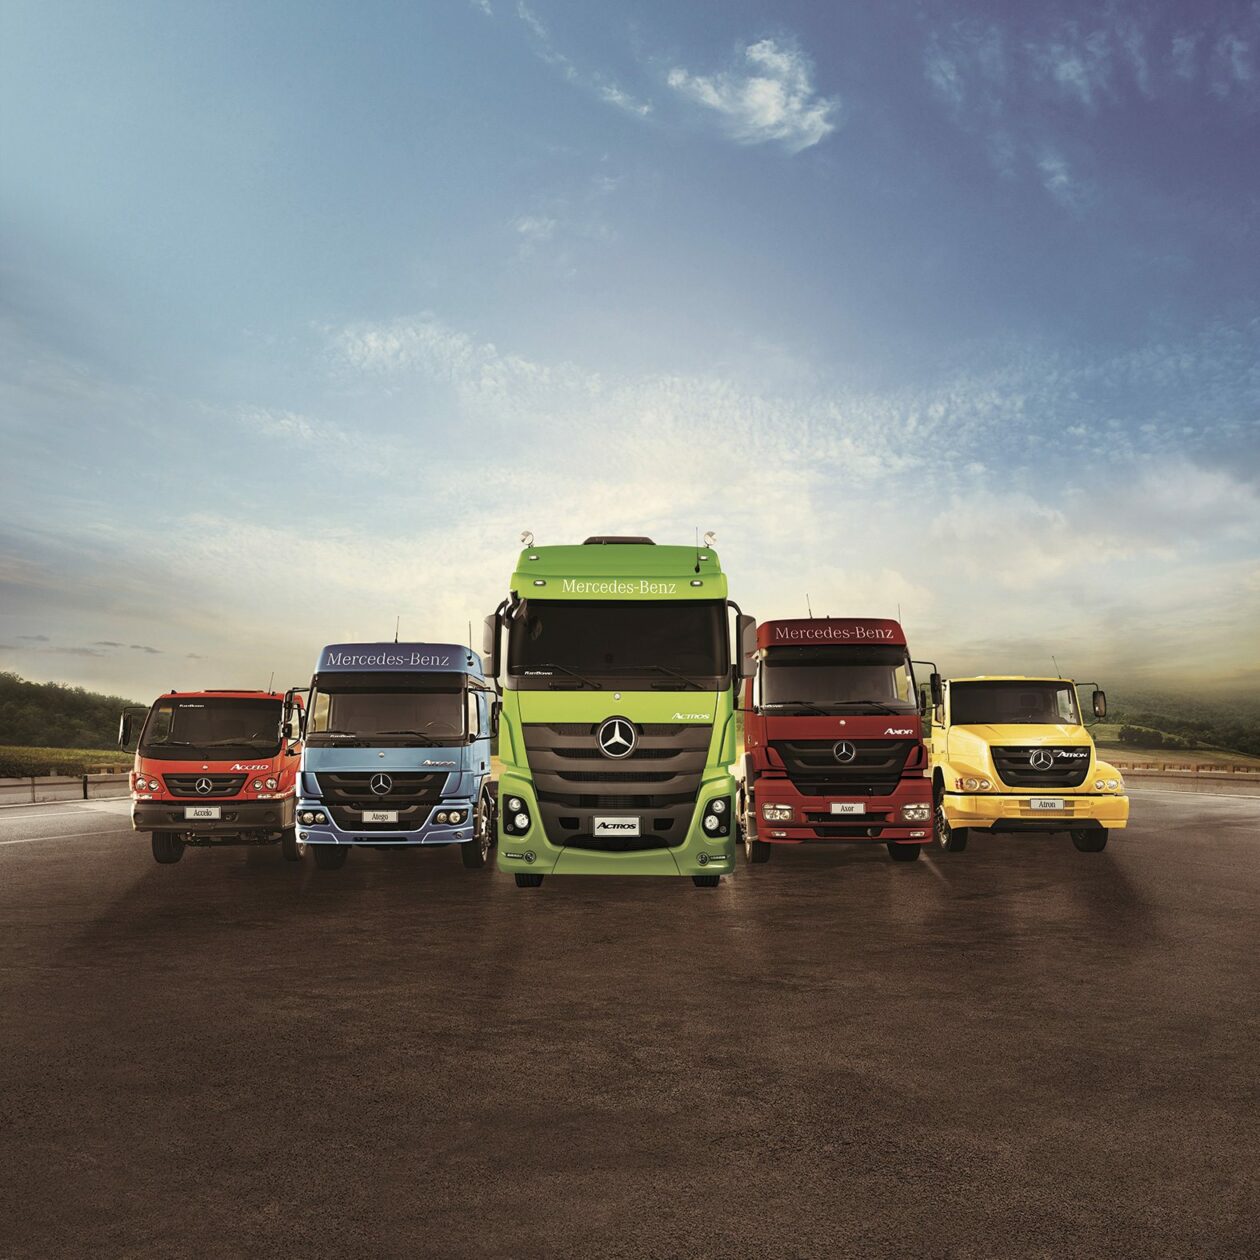 Atualmente a empresa produz e comercializa no Brasil cinco famílias de caminhões: Accelo, Atego, Axor, Actros e Atron